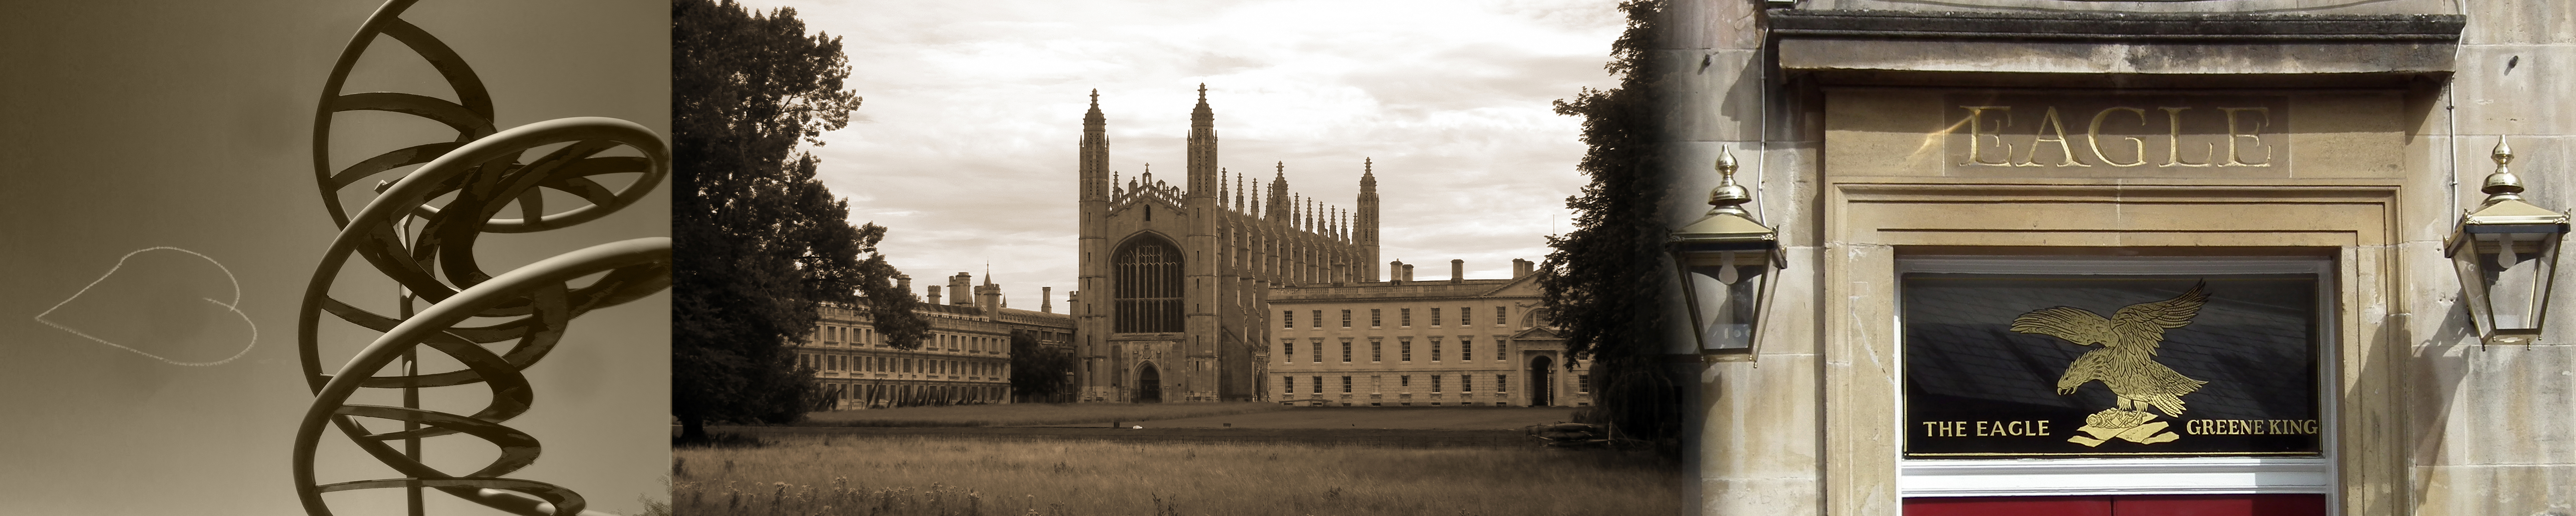 Cambridge pictures